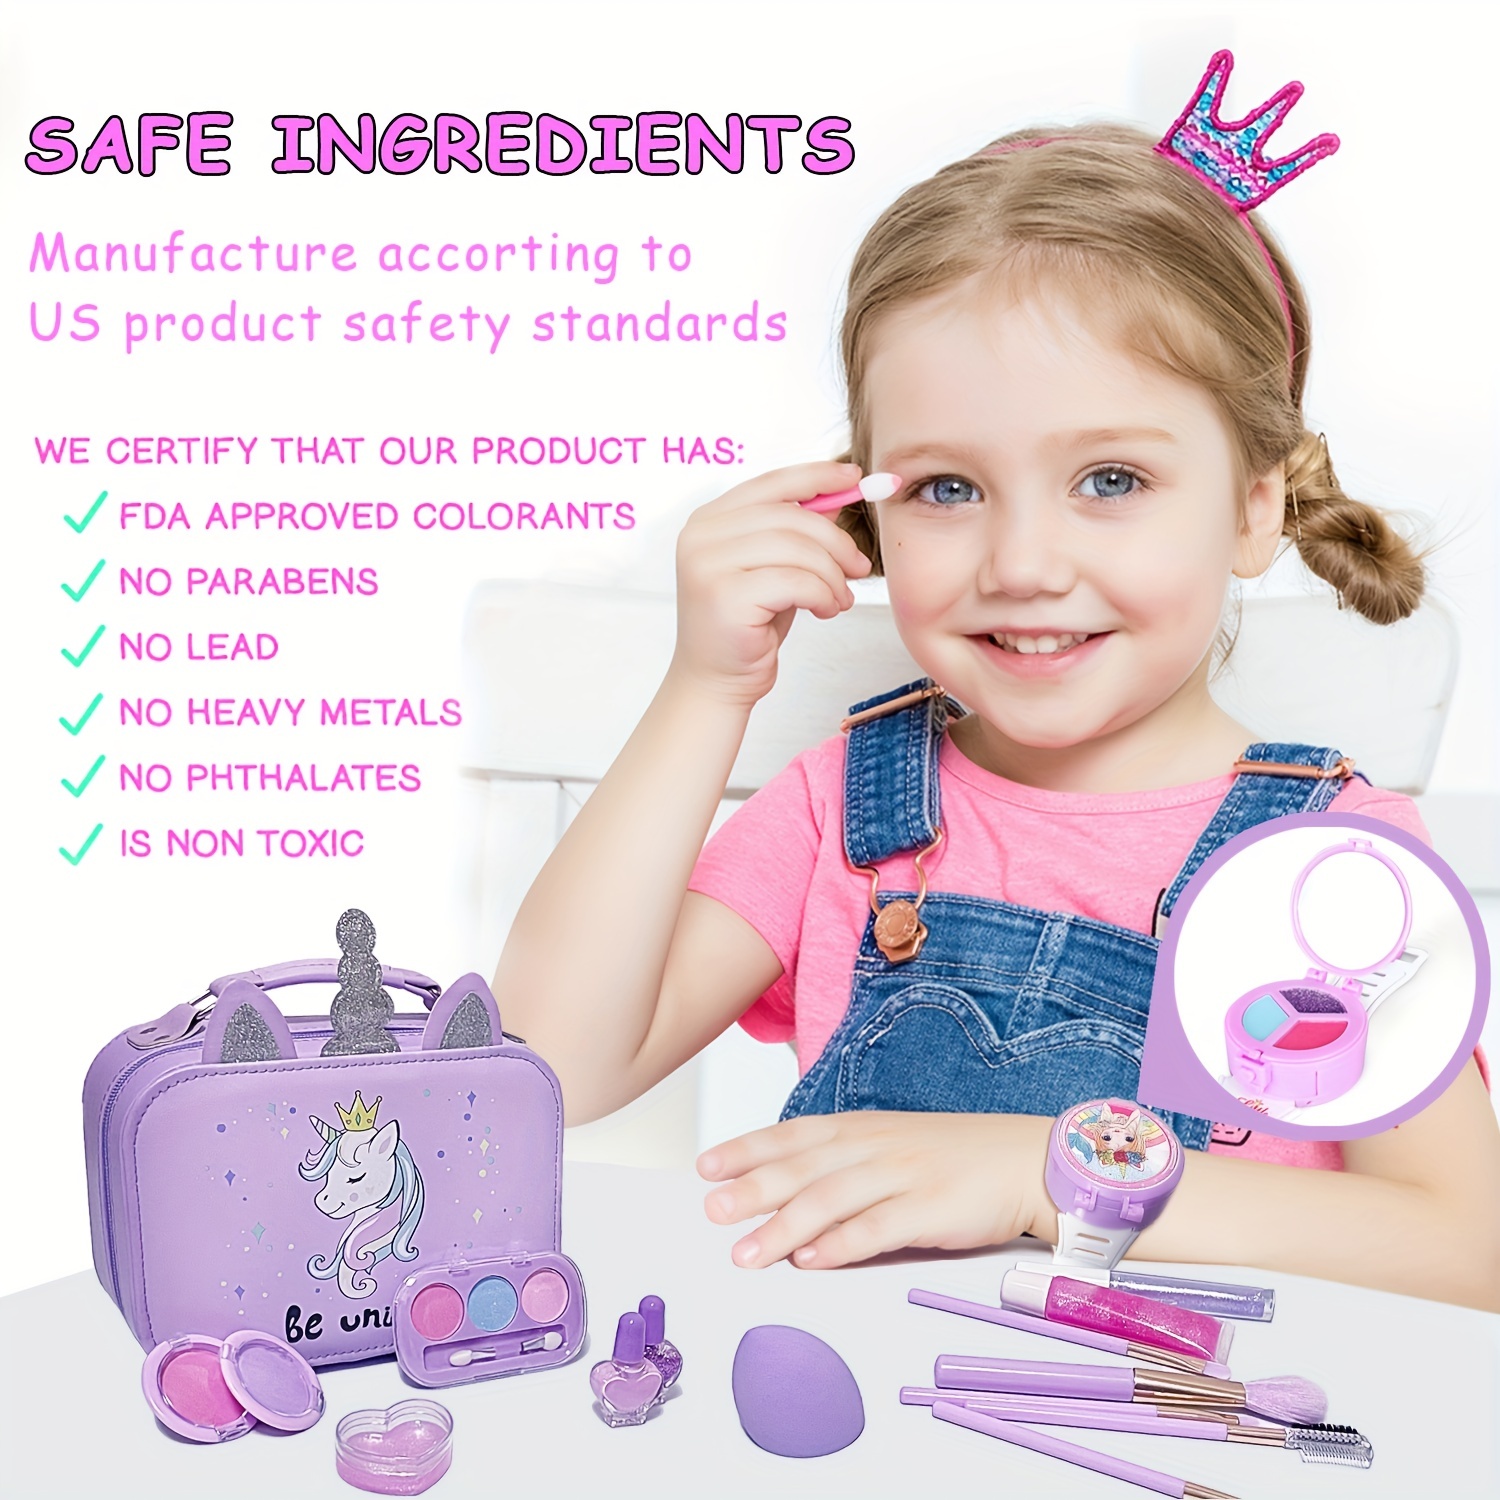  Kit de maquillaje para niñas – Kit de maquillaje para niños,  juguetes para niñas, maquillaje real para niños y niñas, juguetes de maquillaje  para niñas, kit de maquillaje no tóxico para